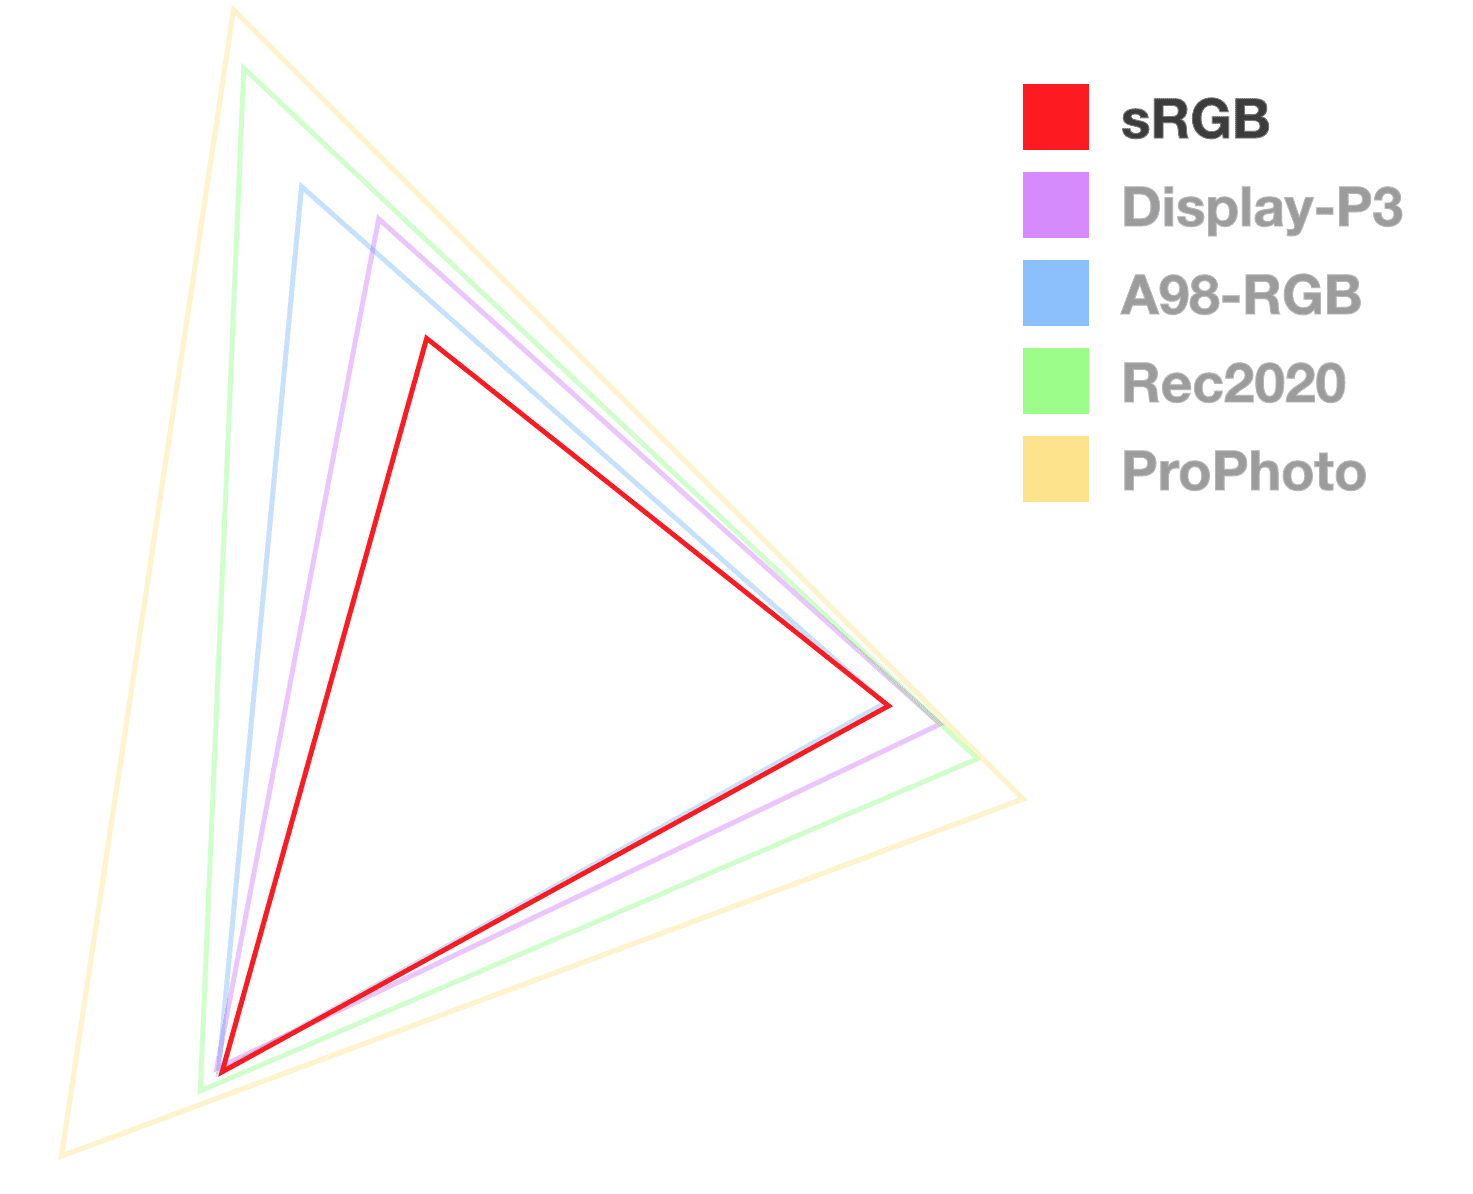 สามเหลี่ยม sRGB เป็นสามเหลี่ยมเดียวที่ทึบแสงเต็มที่ซึ่งช่วยให้เห็นภาพขนาดของขอบเขต